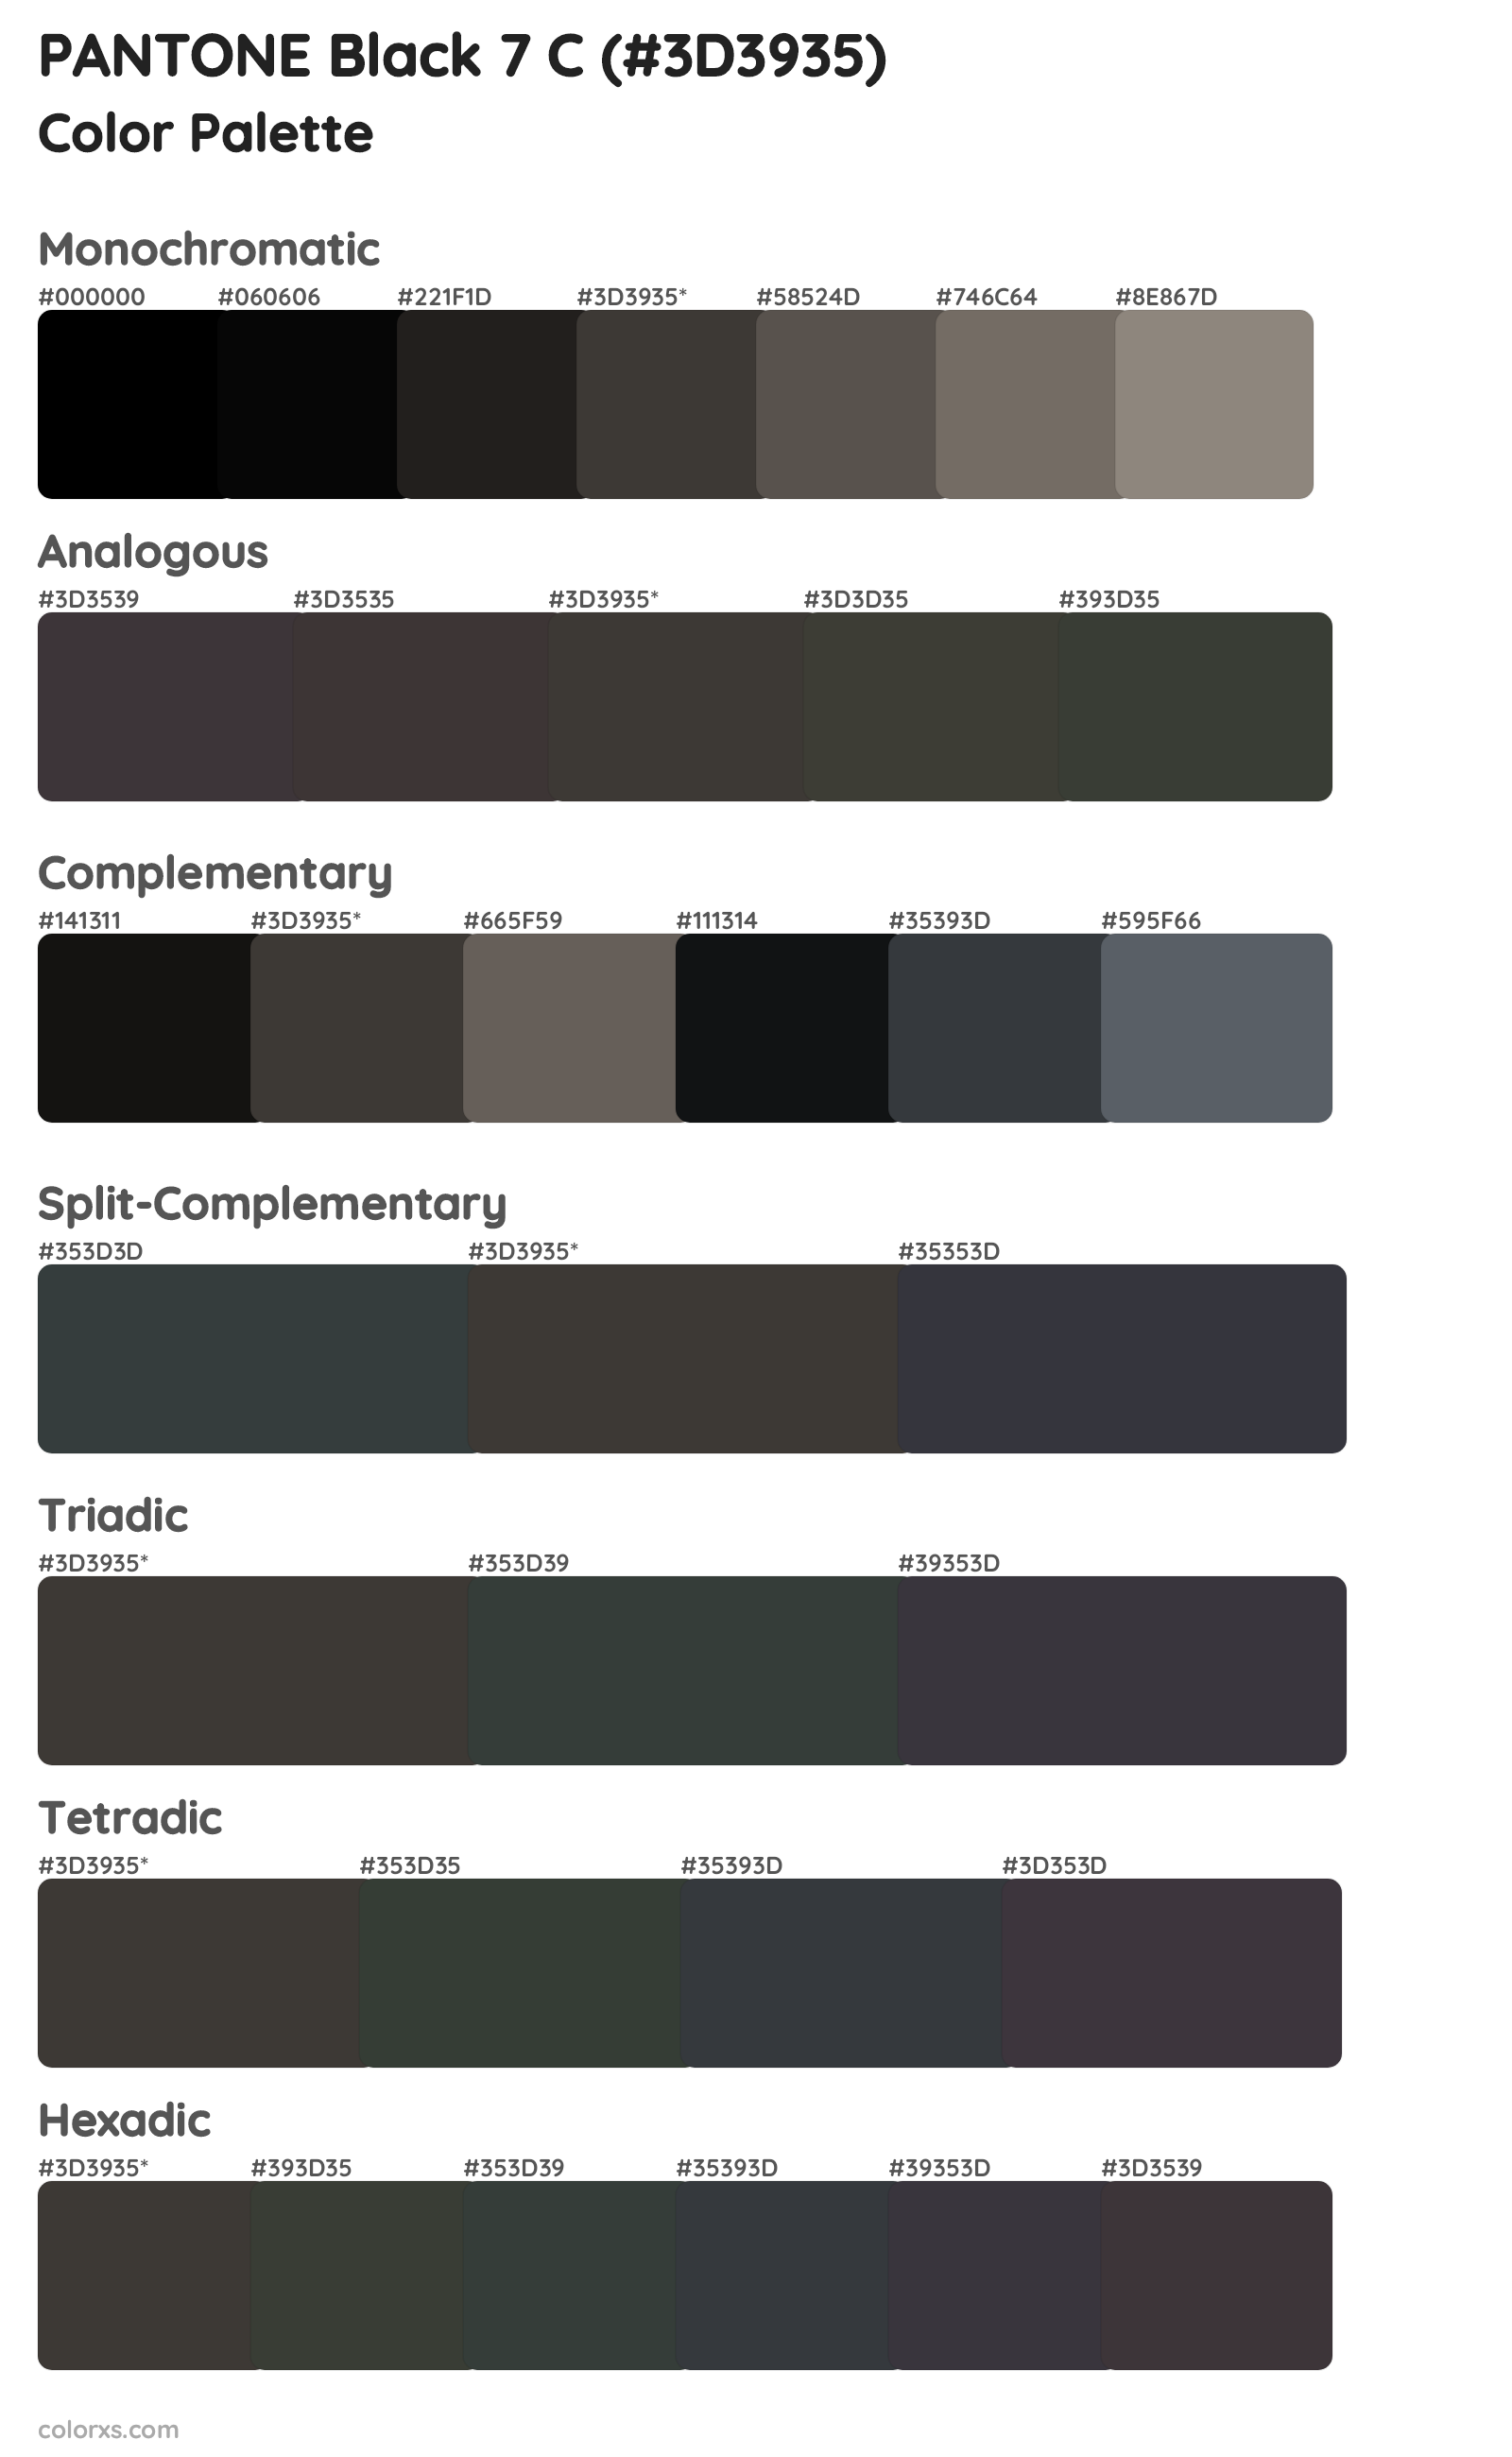 PANTONE Black 7 C Color Scheme Palettes